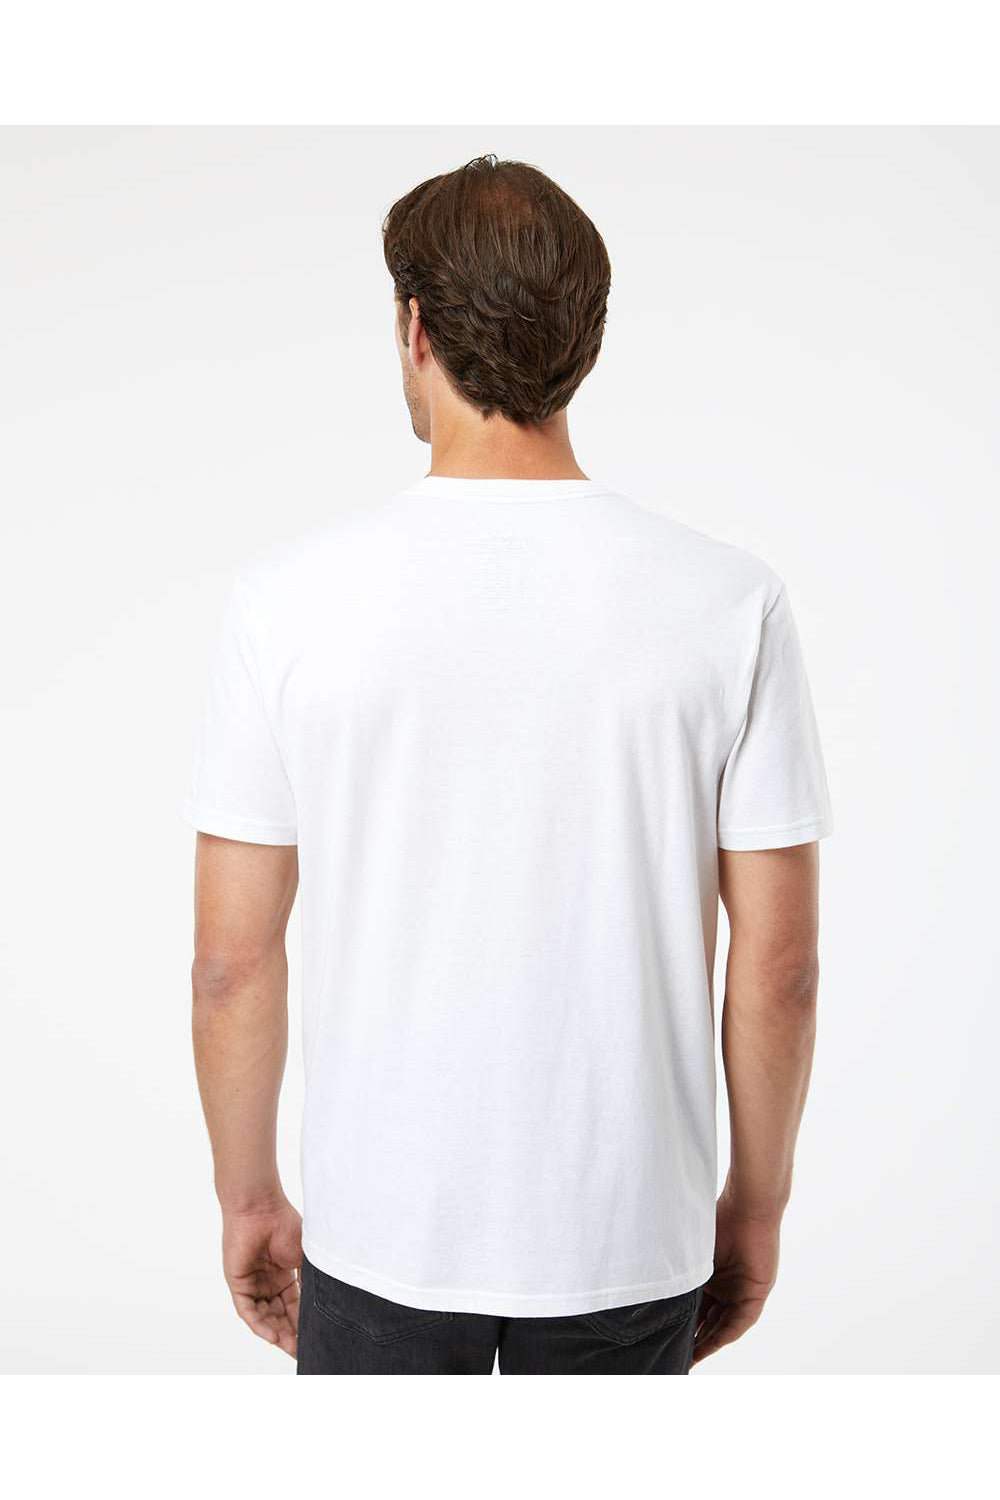 Kastlfel 2010 Mens RecycledSoft Short Sleve Crewneck T-Shirt White Model Back